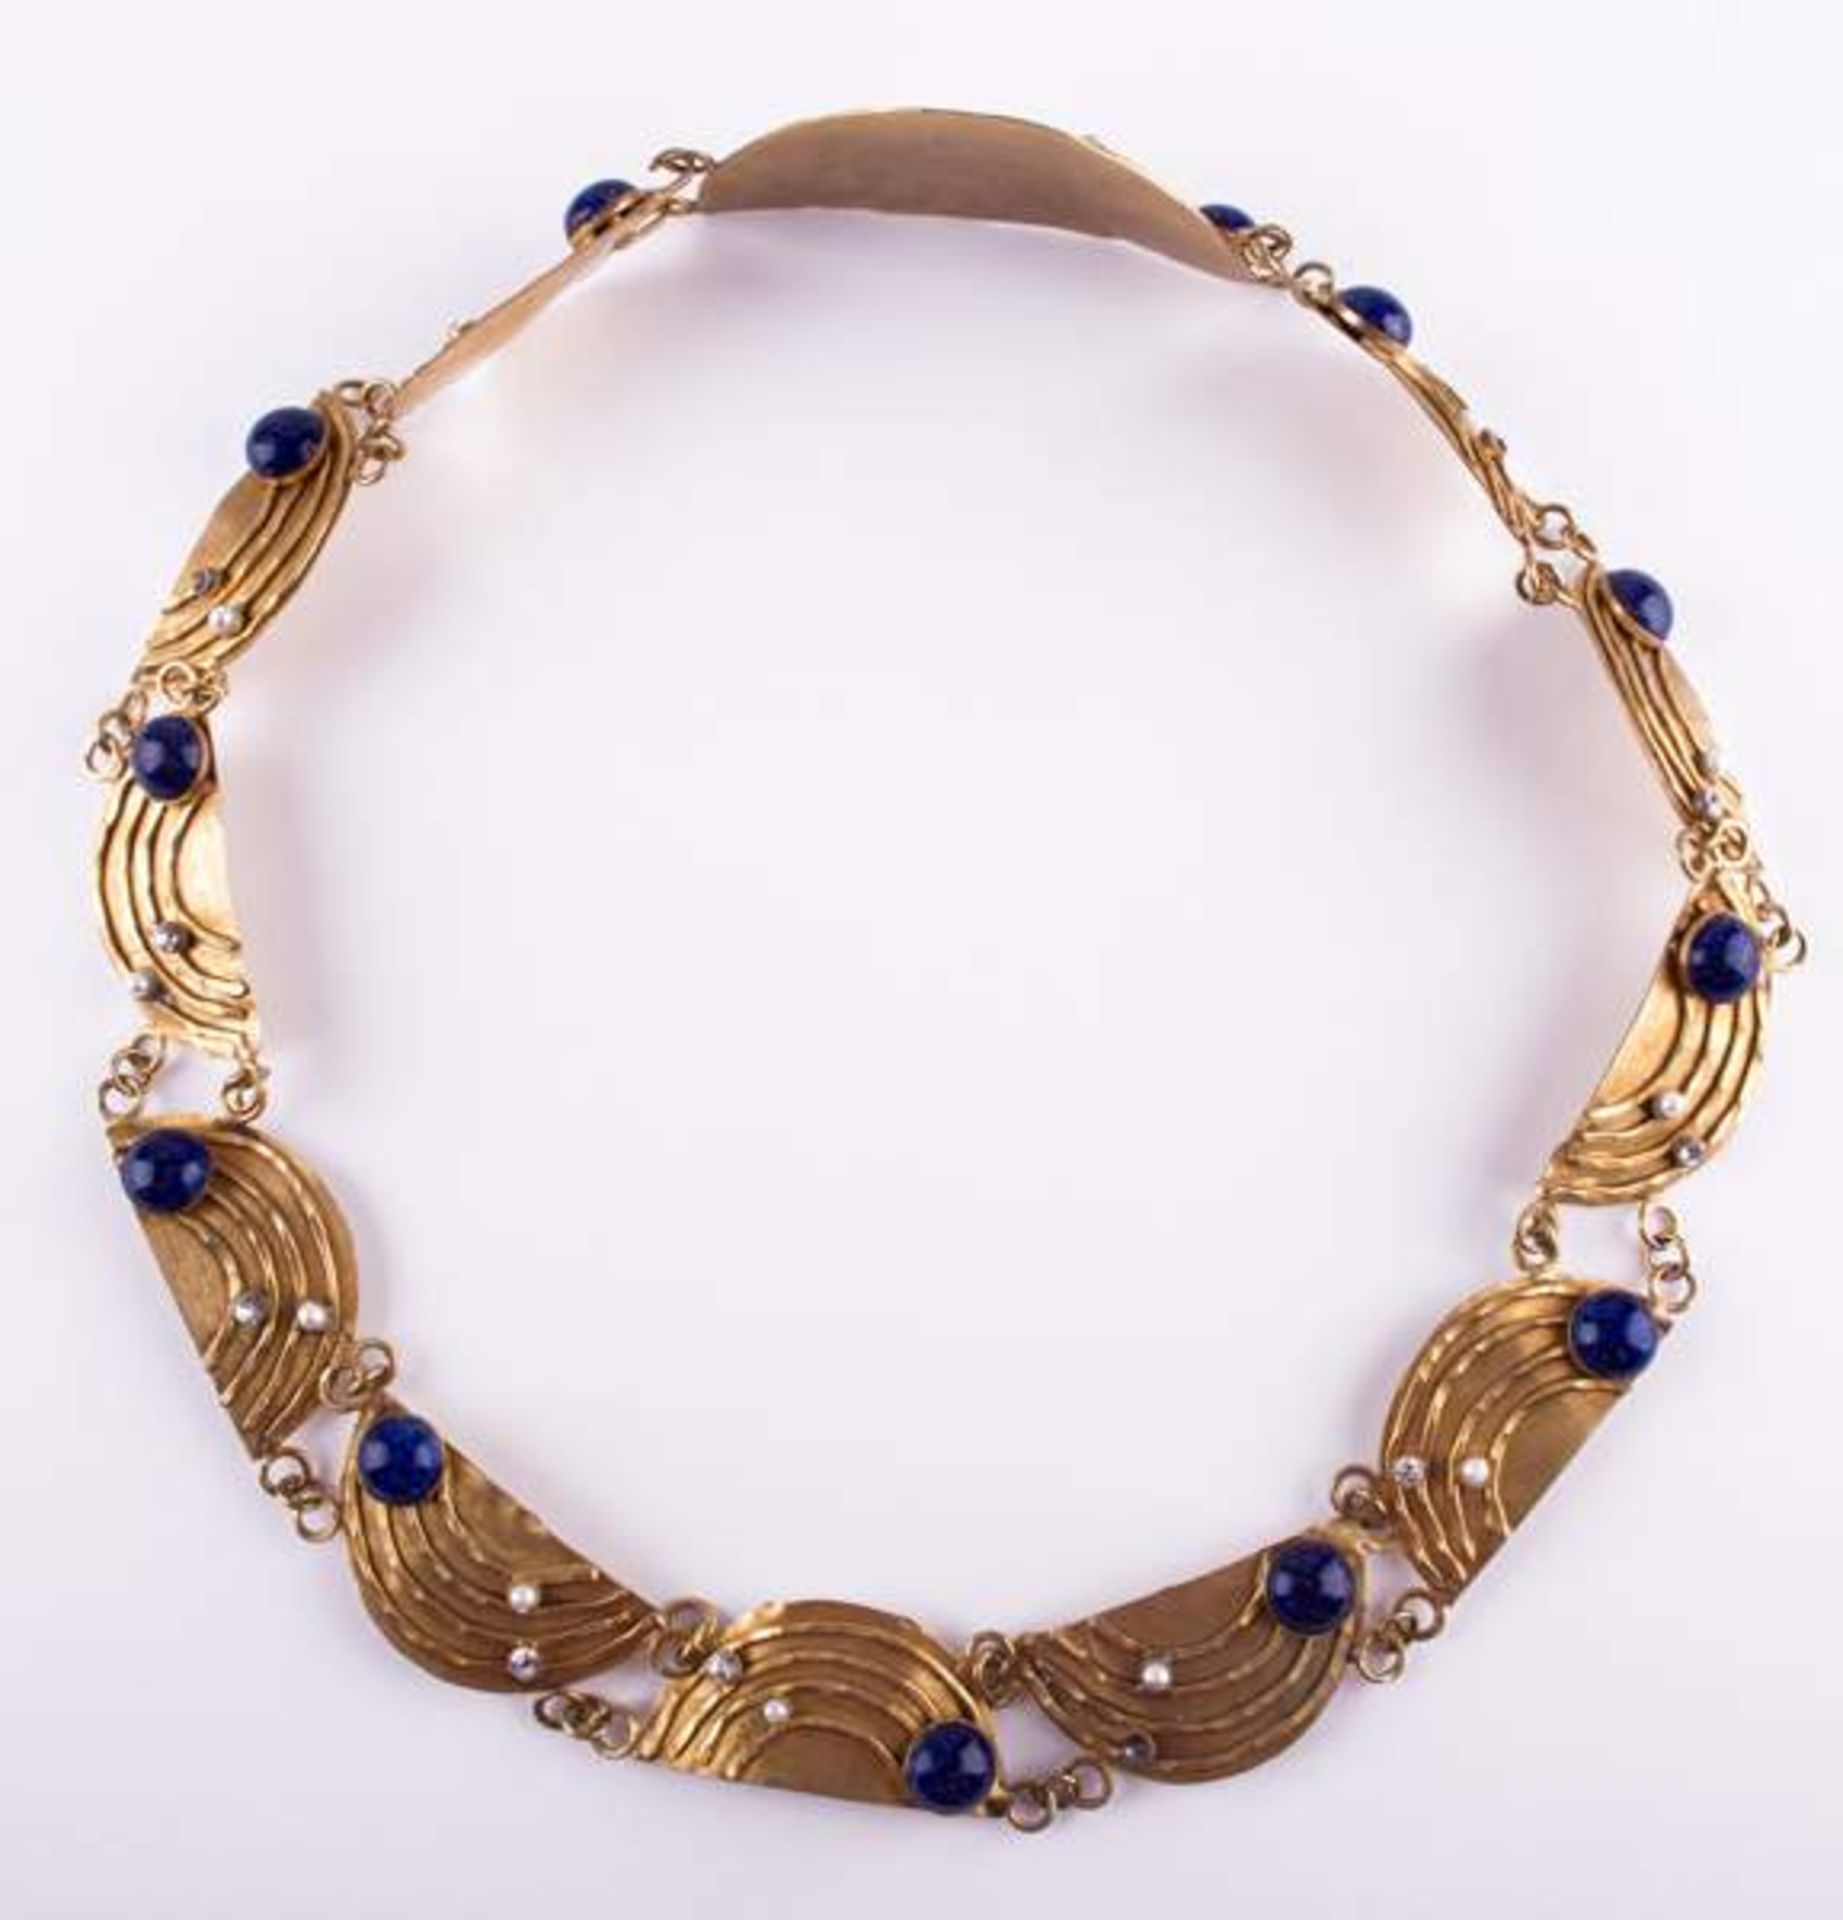 Schmuckgürtel Arabisch / Jewellery belt, Arabianmit verschiedenem Steinbesatz, Lapislazuli, echte